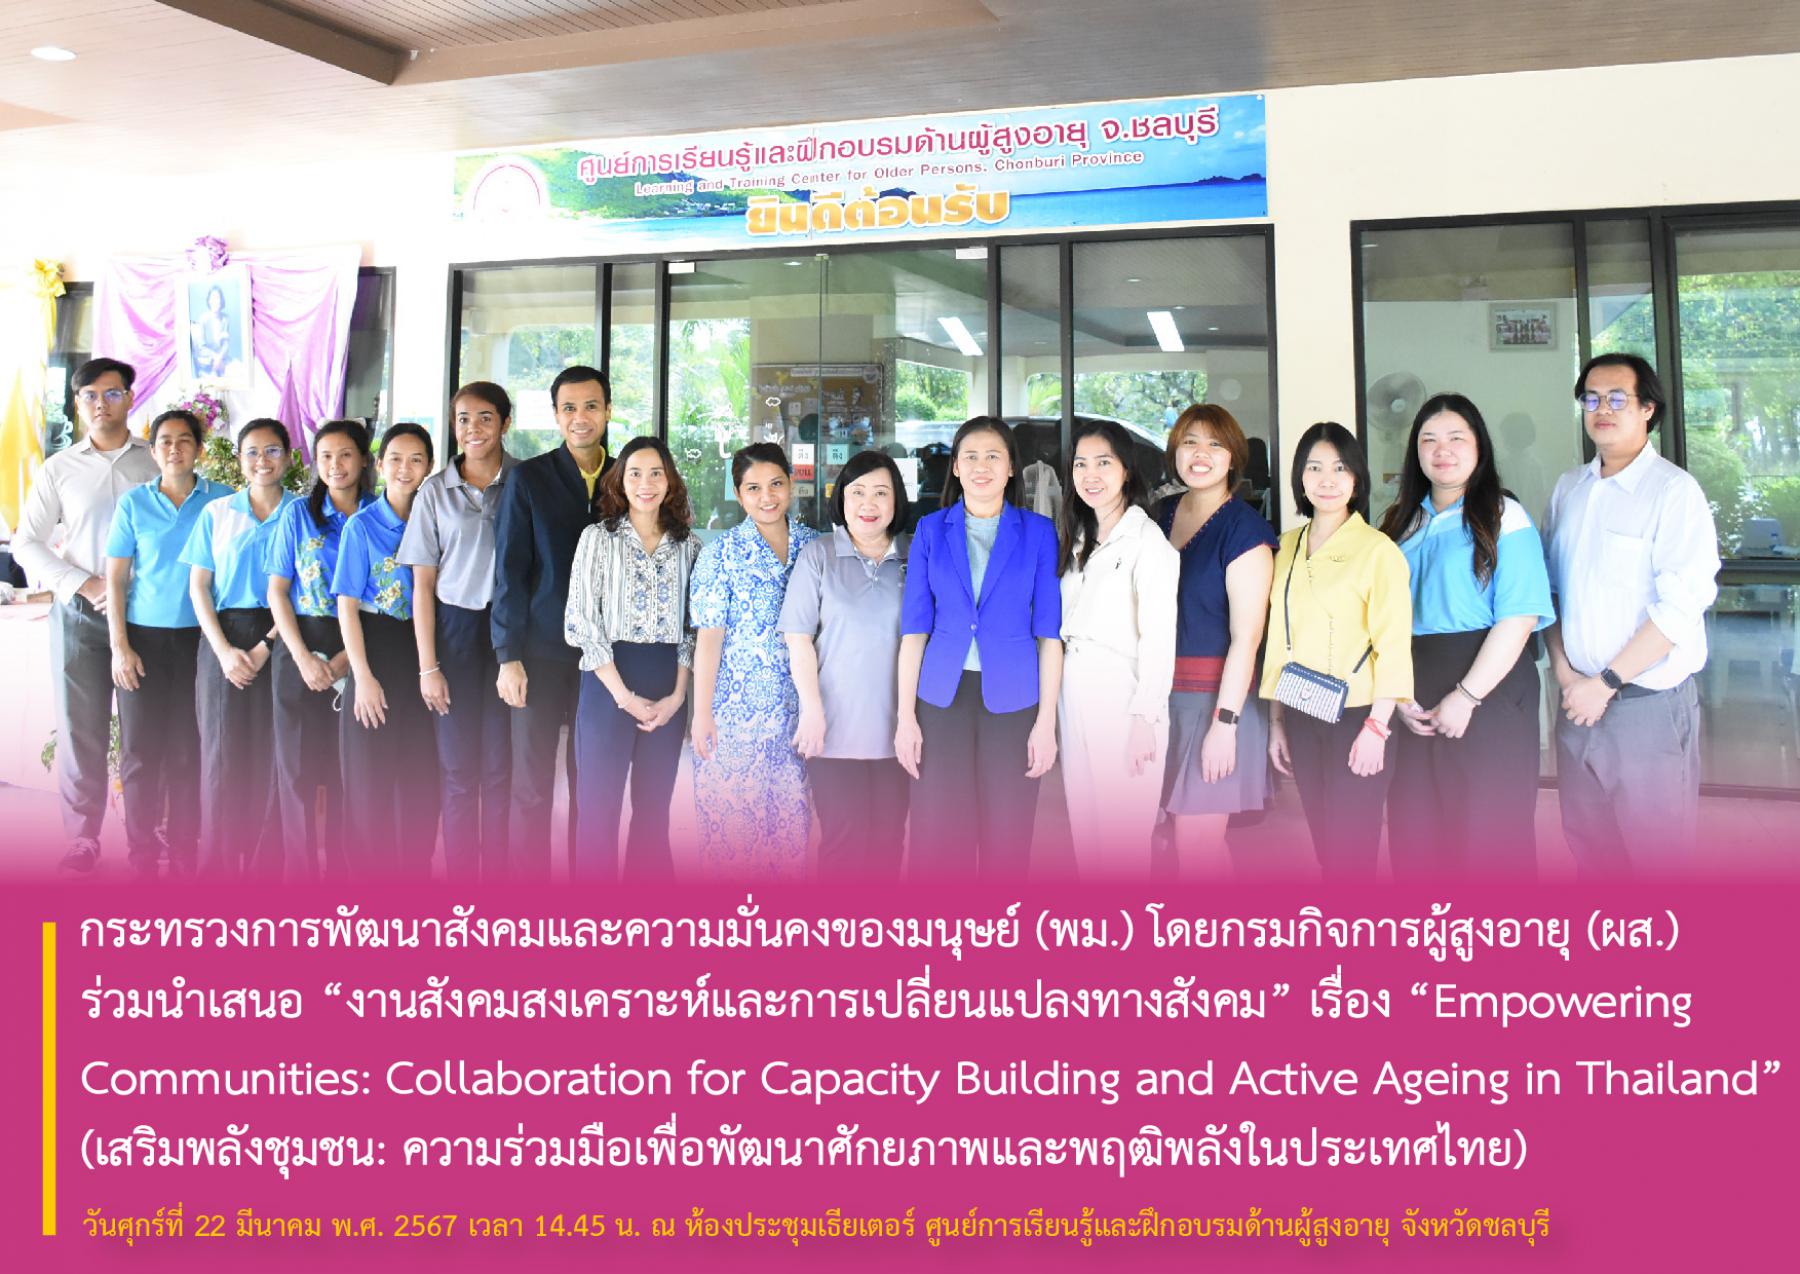 พม. โดย กรม ผส. ร่วมนำเสนอ “งานสังคมสงเคราะห์และการเปลี่ยนแปลงทางสังคม” เรื่อง “Empowering Communities: Collaboration for Capacity Building and Active Ageing in Thailand”